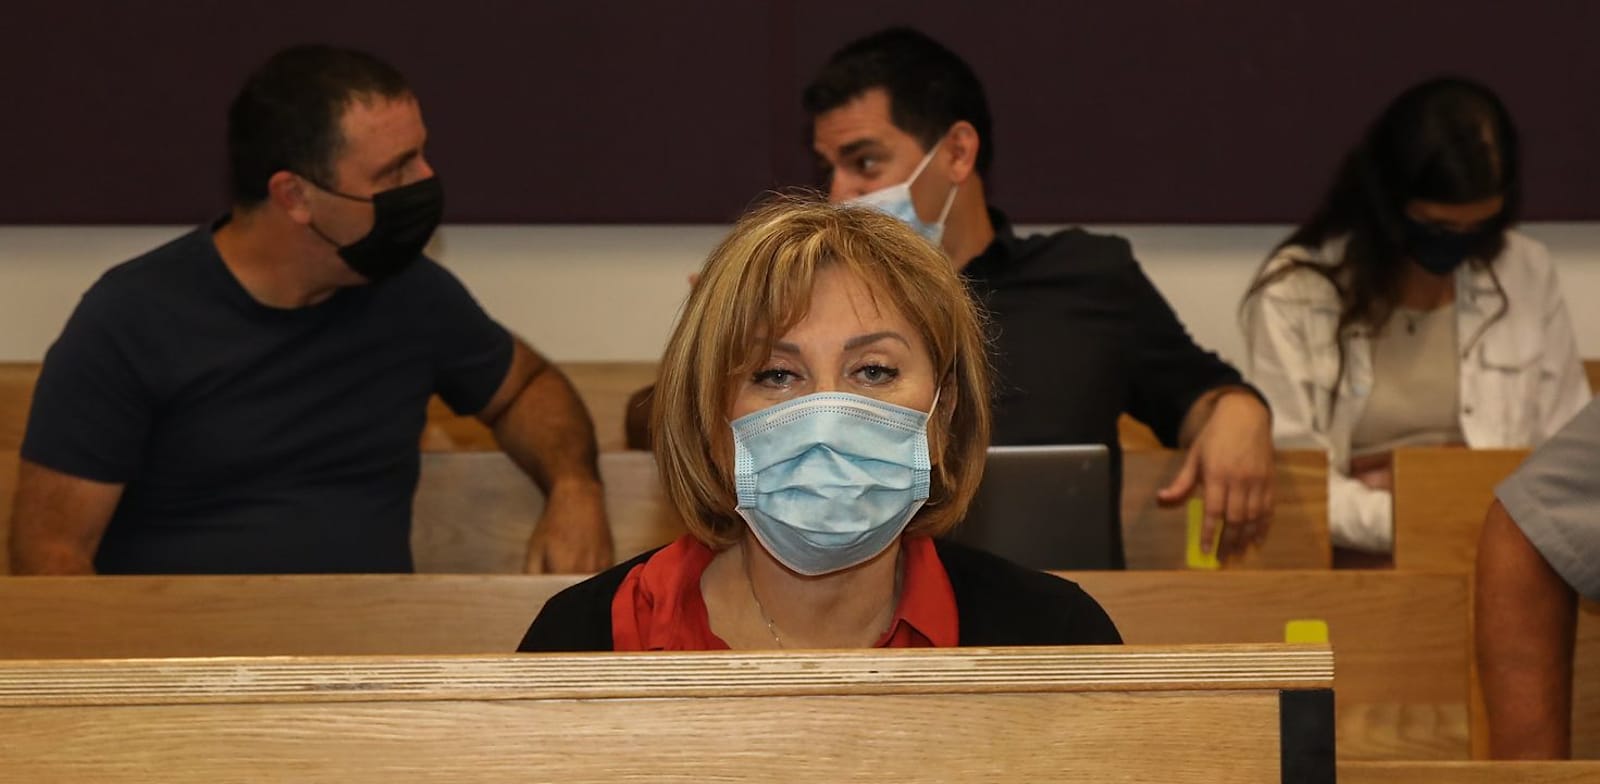 פאינה קירשנבאום היום בבית המשפט / צילום: כדיה לוי